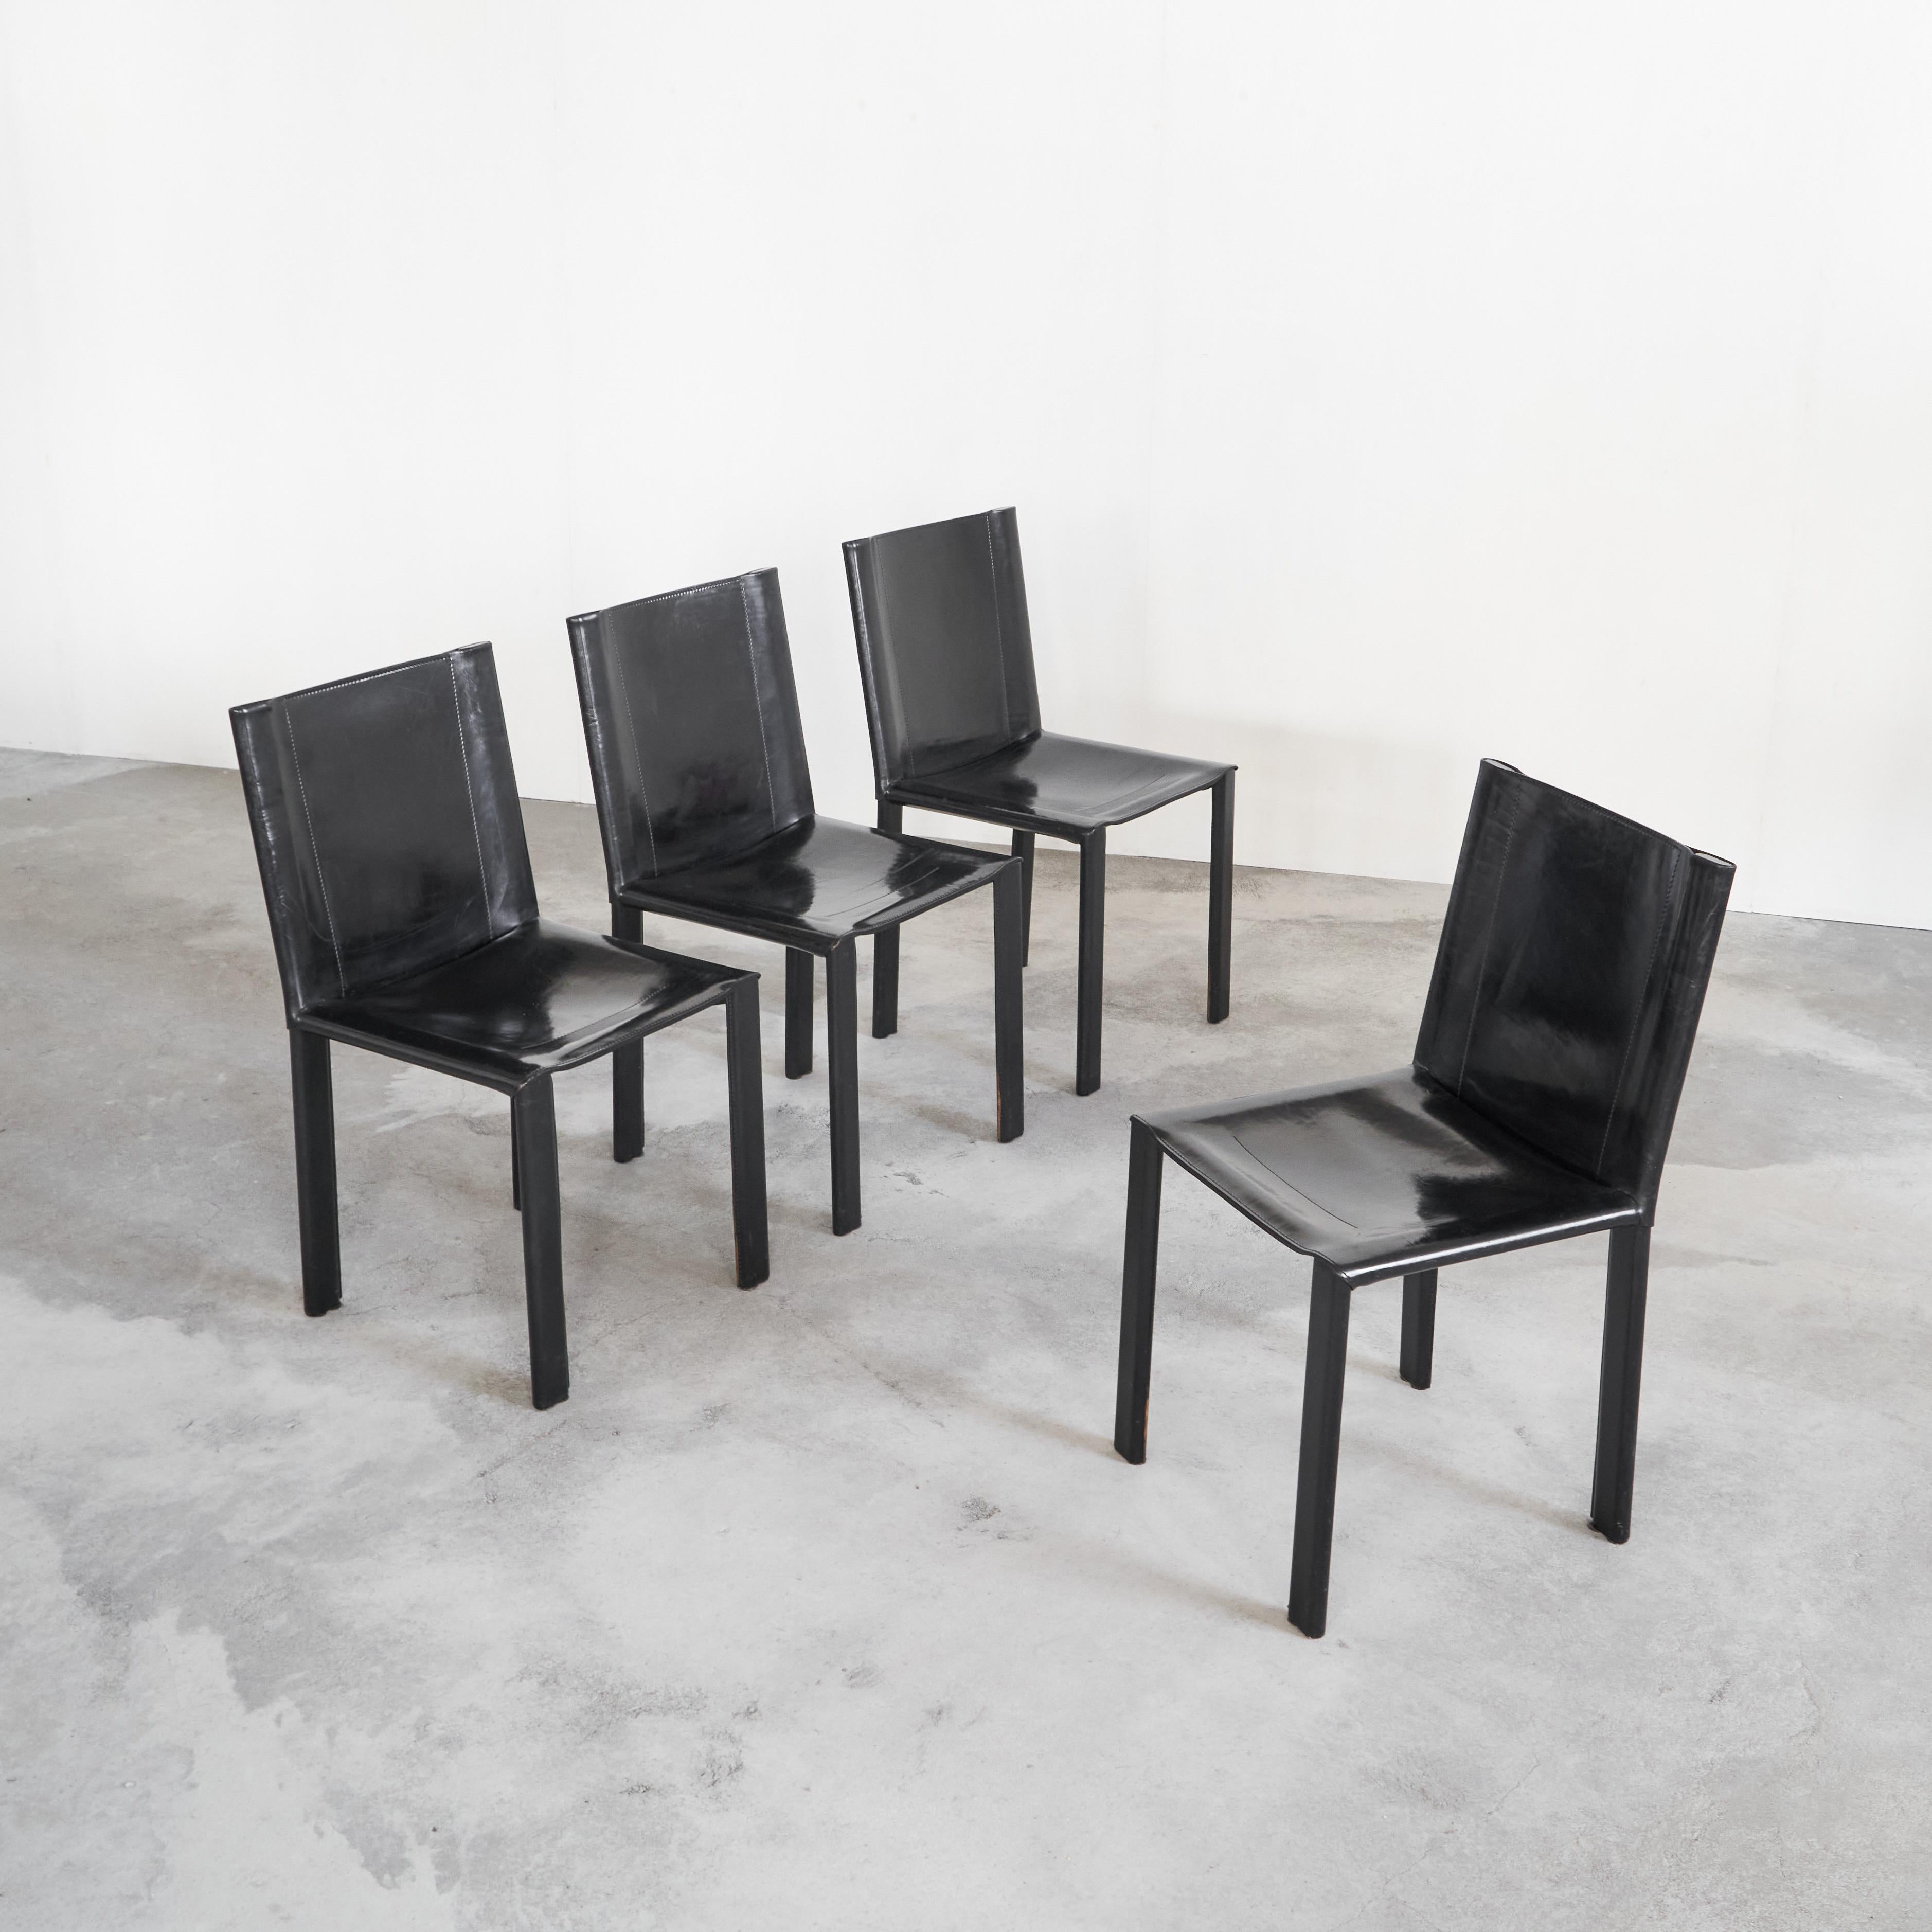 Ensemble de 4 chaises en cuir noir par Matteo Grassi, Italie, années 1990.

Un magnifique ensemble de quatre chaises Matteo Grassi de haute qualité avec un magnifique cuir de selle noir patiné. Ressemble aux célèbres chaises CAB de Bellini par son